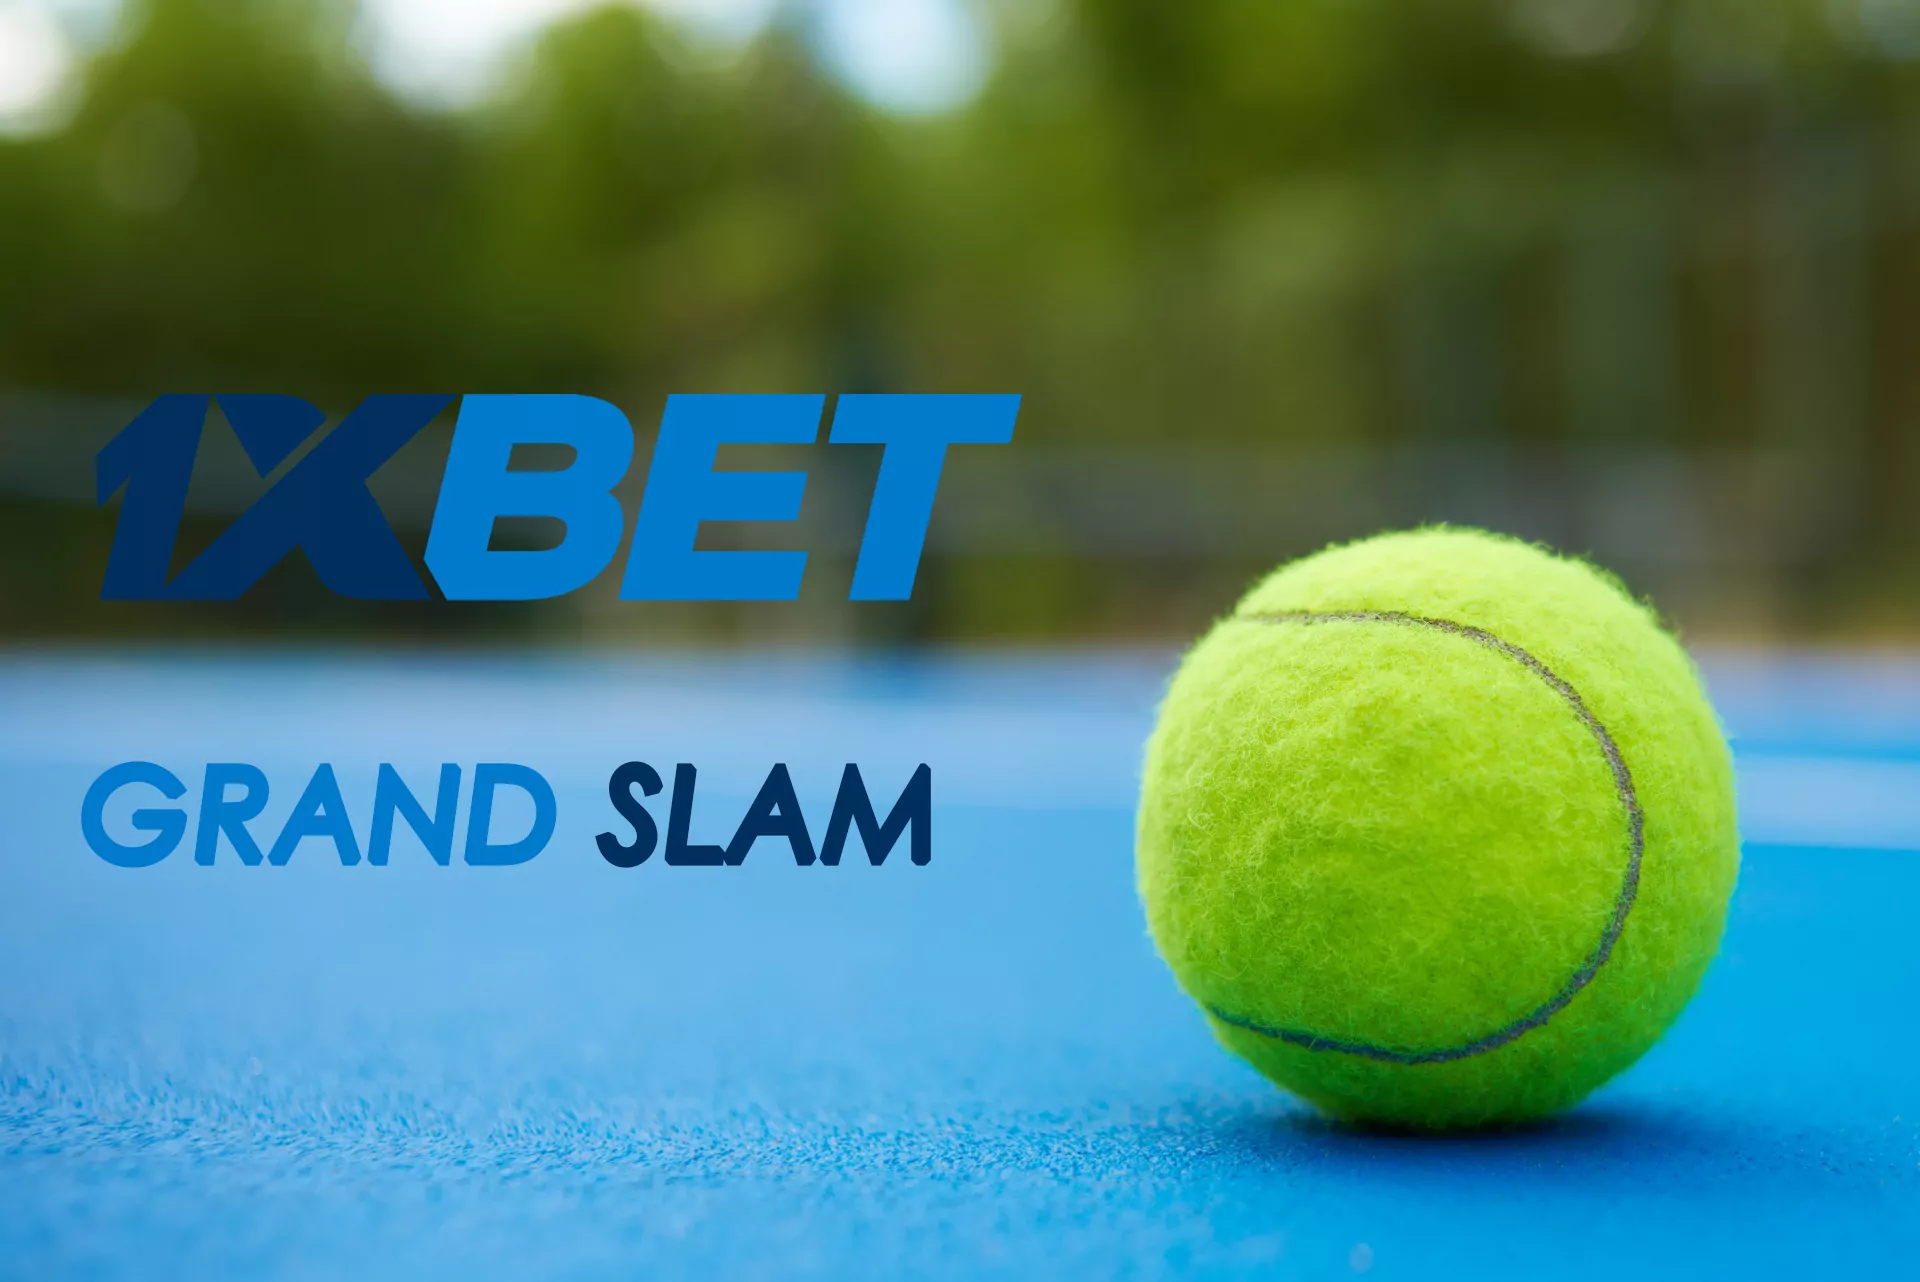 ग्रैंड स्लैम टूर्नामेंट के दौरान 1xBet टेनिस पर सट्टेबाजी के लिए विशेष बोनस प्रदान करता है।